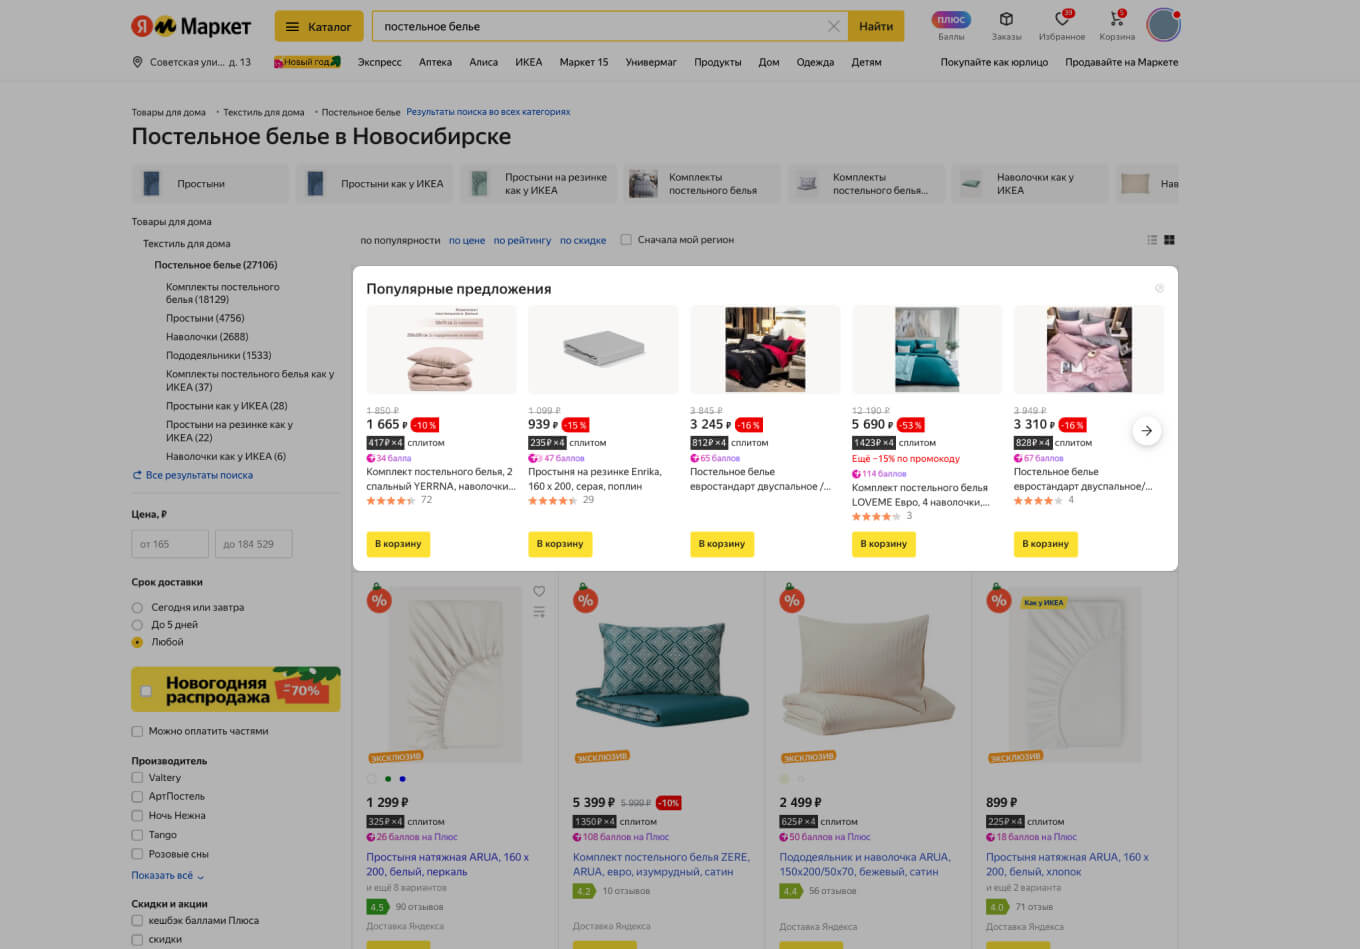 Как продавать на Яндекс Маркете: как разместить свой товар, условия,  сколько стоит создание магазина